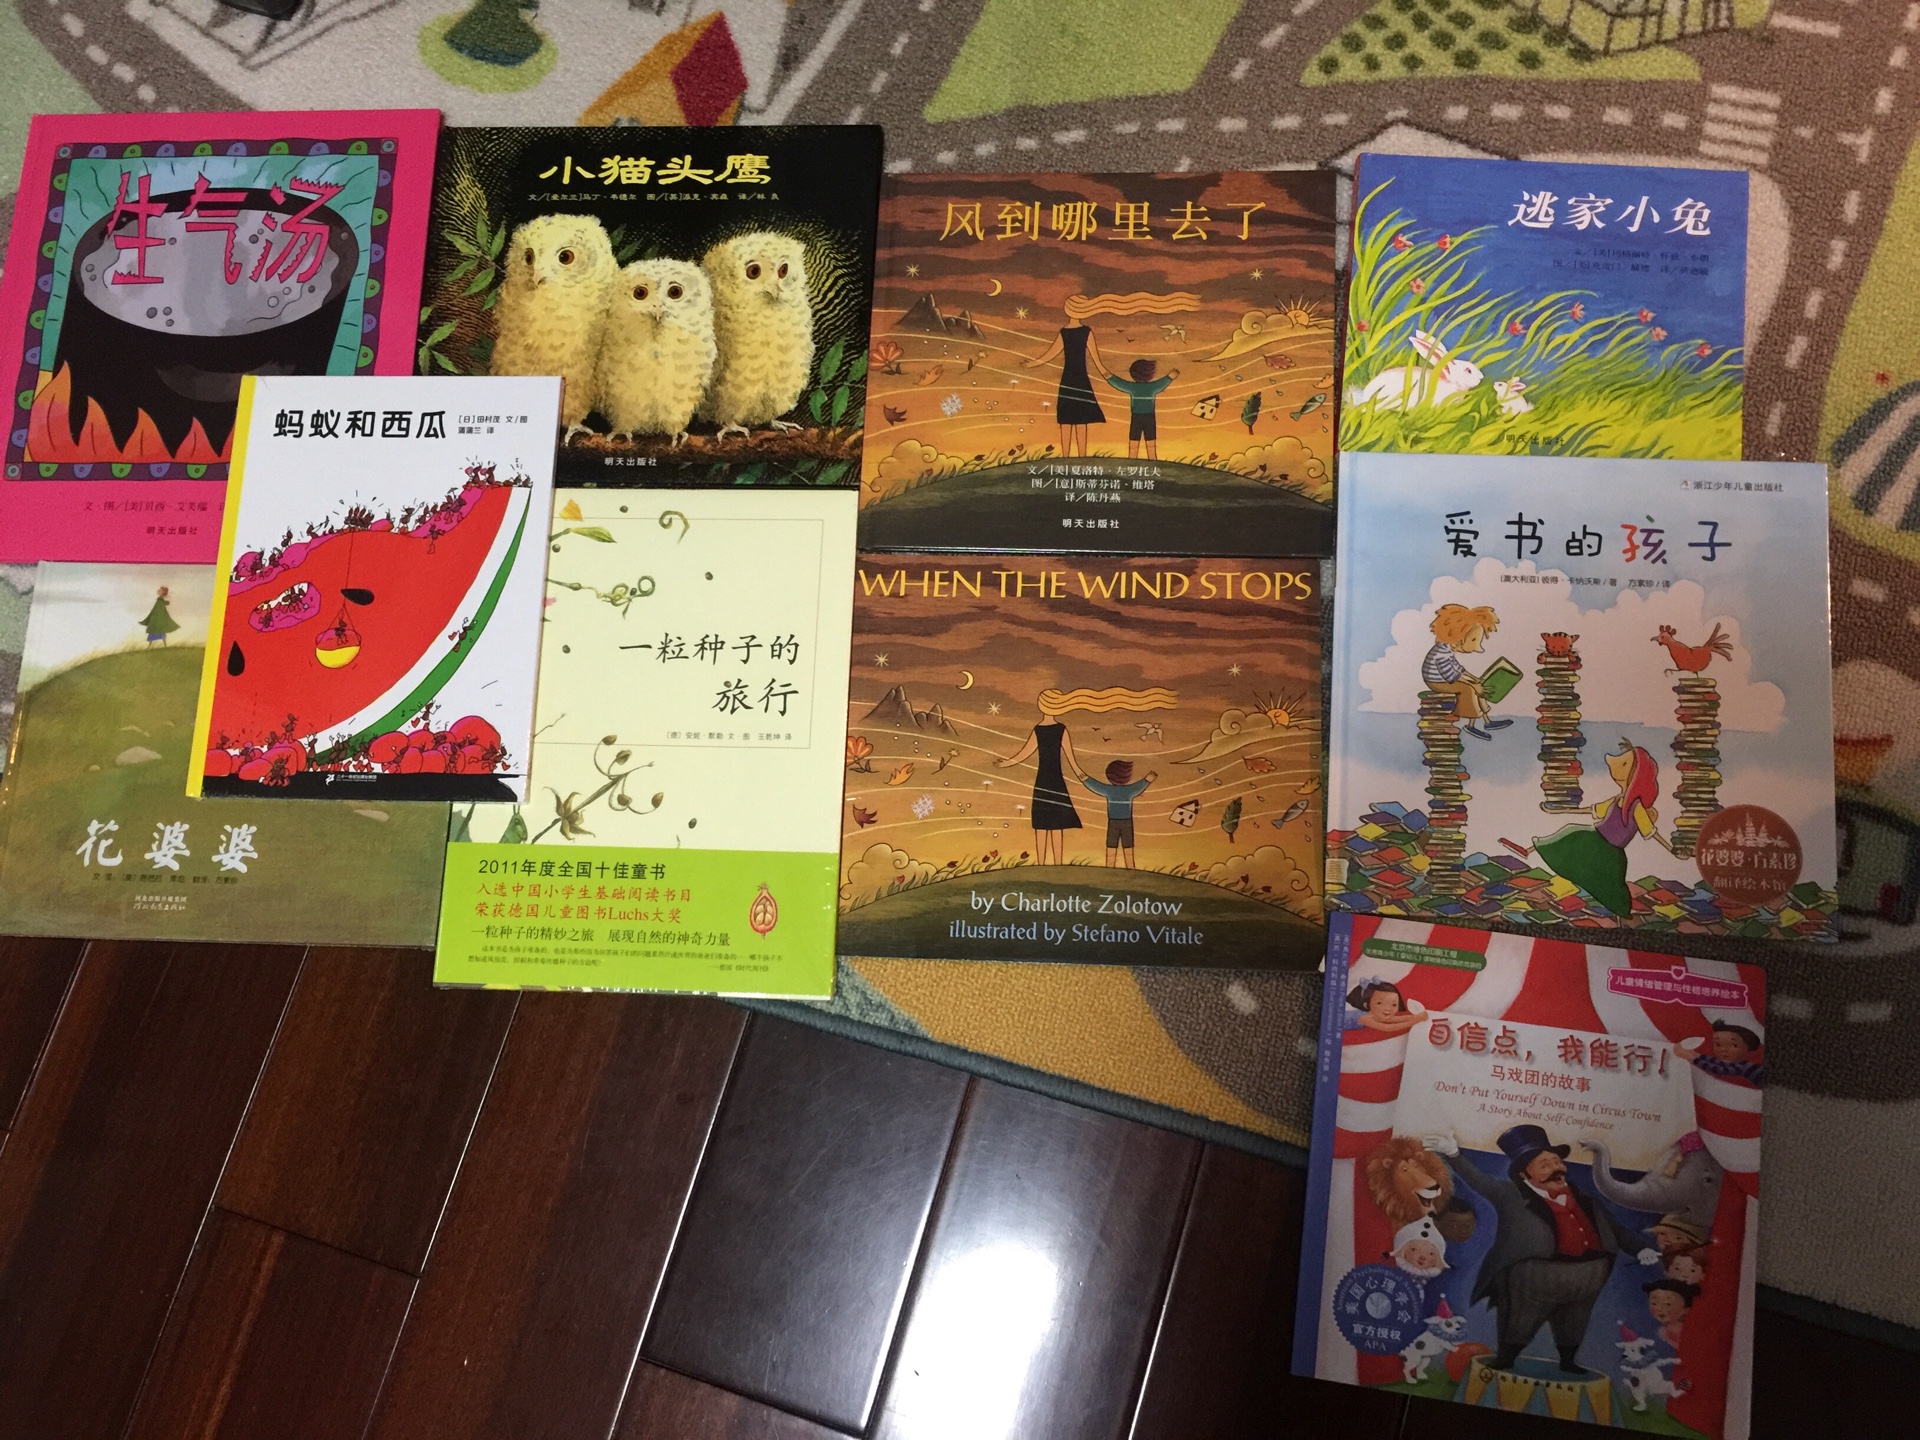 中文英文都买了。乘着活动买了一堆的绘本。有些是已经看过的，还准备放家里可以经常翻看。